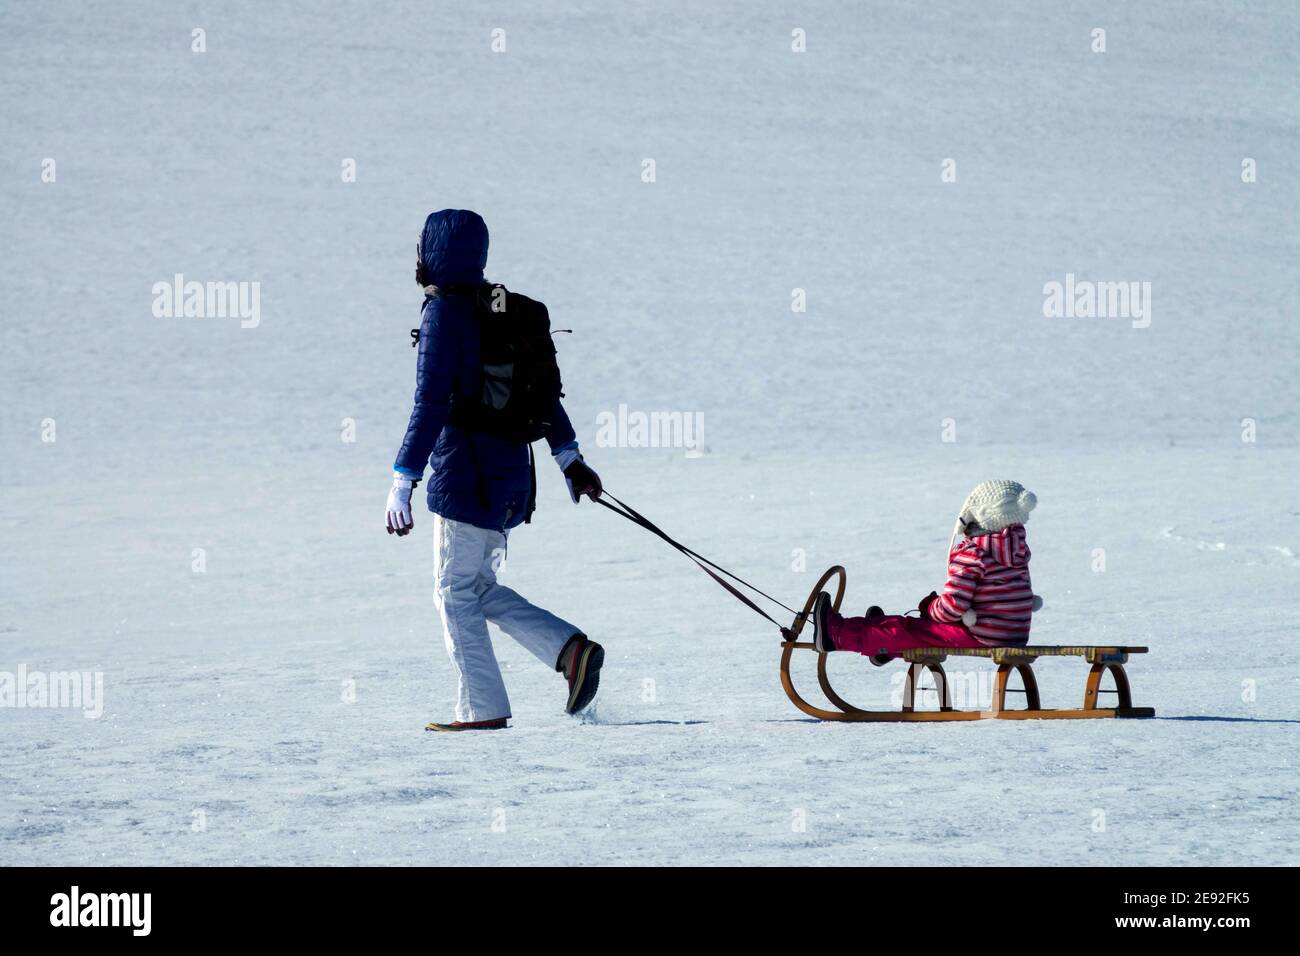 Schlittenfahren im Winter, weibliches Kind auf Schlitten, Schneelandschaft Frau und Kind Stockfoto